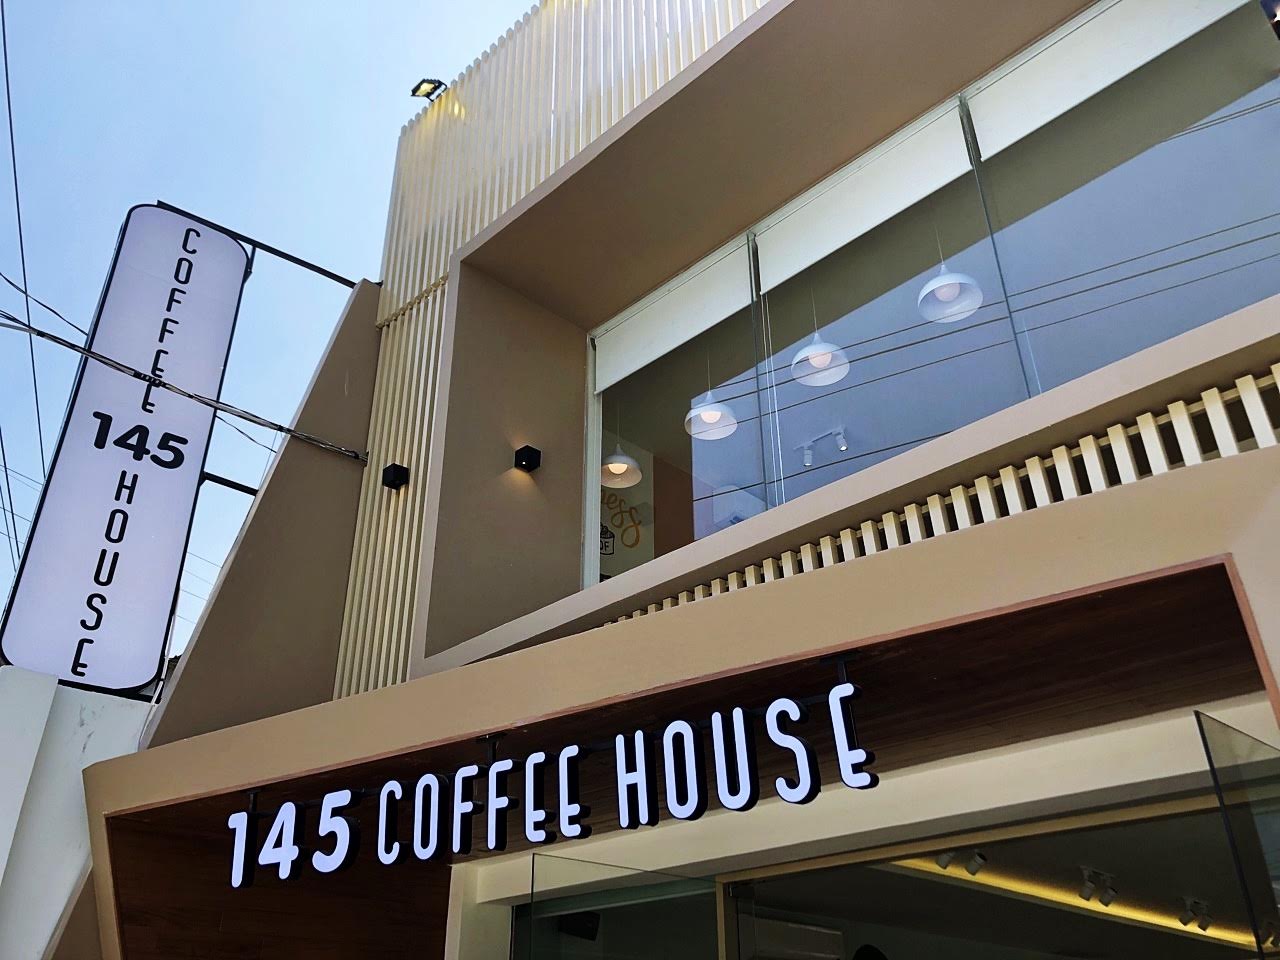 noi-that-quan-cafe-145-coffee-house-binh-duong-3